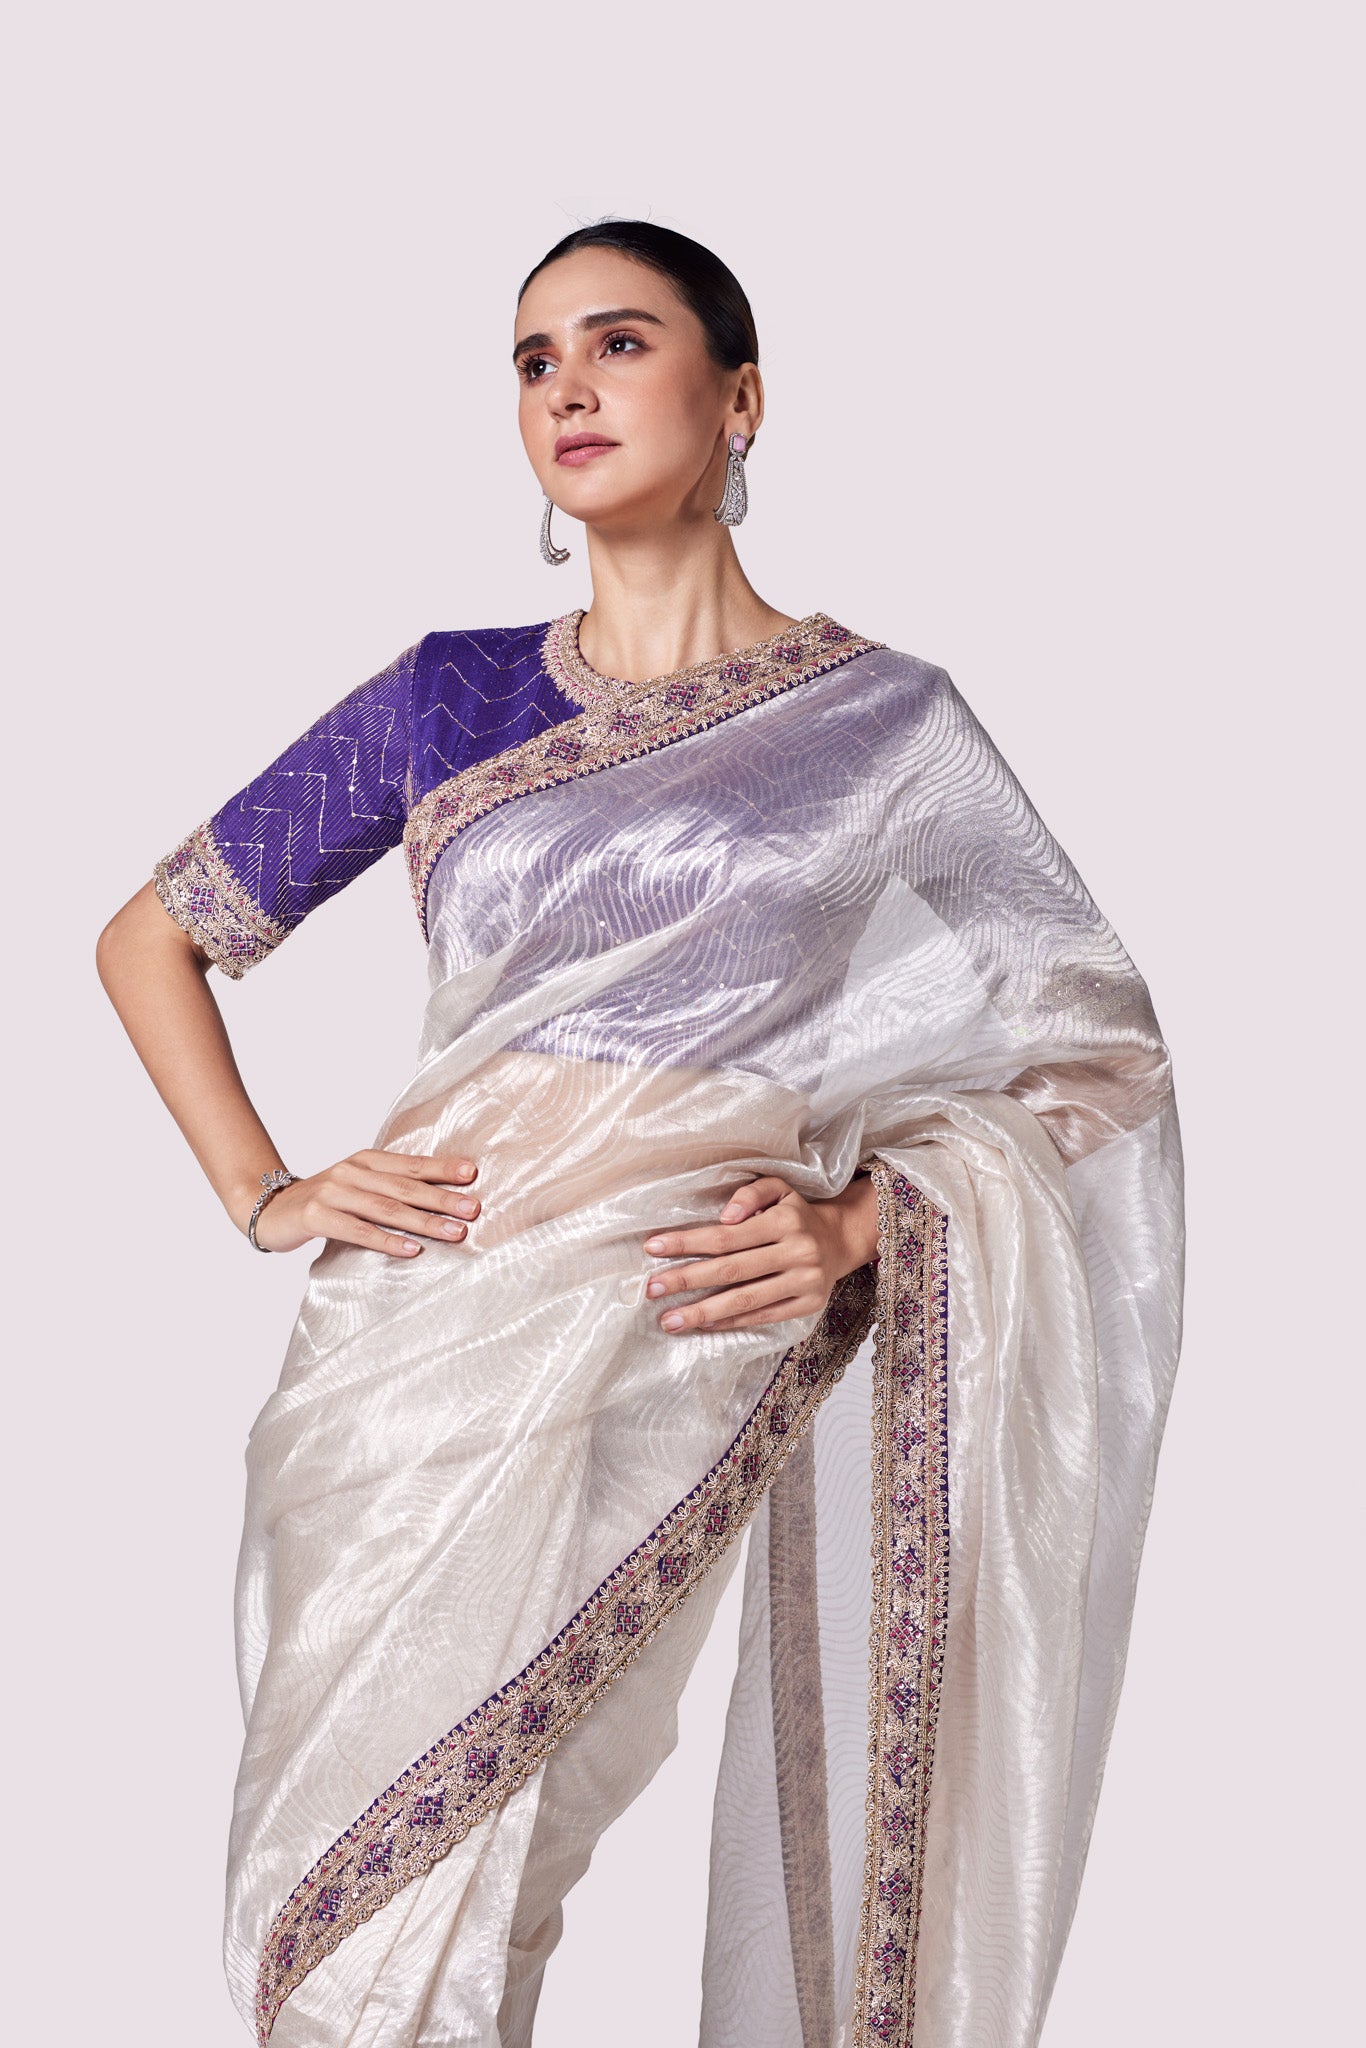 Buy silver zari tissue saree online in USA with purple embroidered designer blouse. Look like a royalty in exquisite designer sarees, embroidered sarees, handwoven sarees, pure silk saris, Banarasi sarees, Kanjivaram sarees from Pure Elegance Indian saree store in USA.-closuep